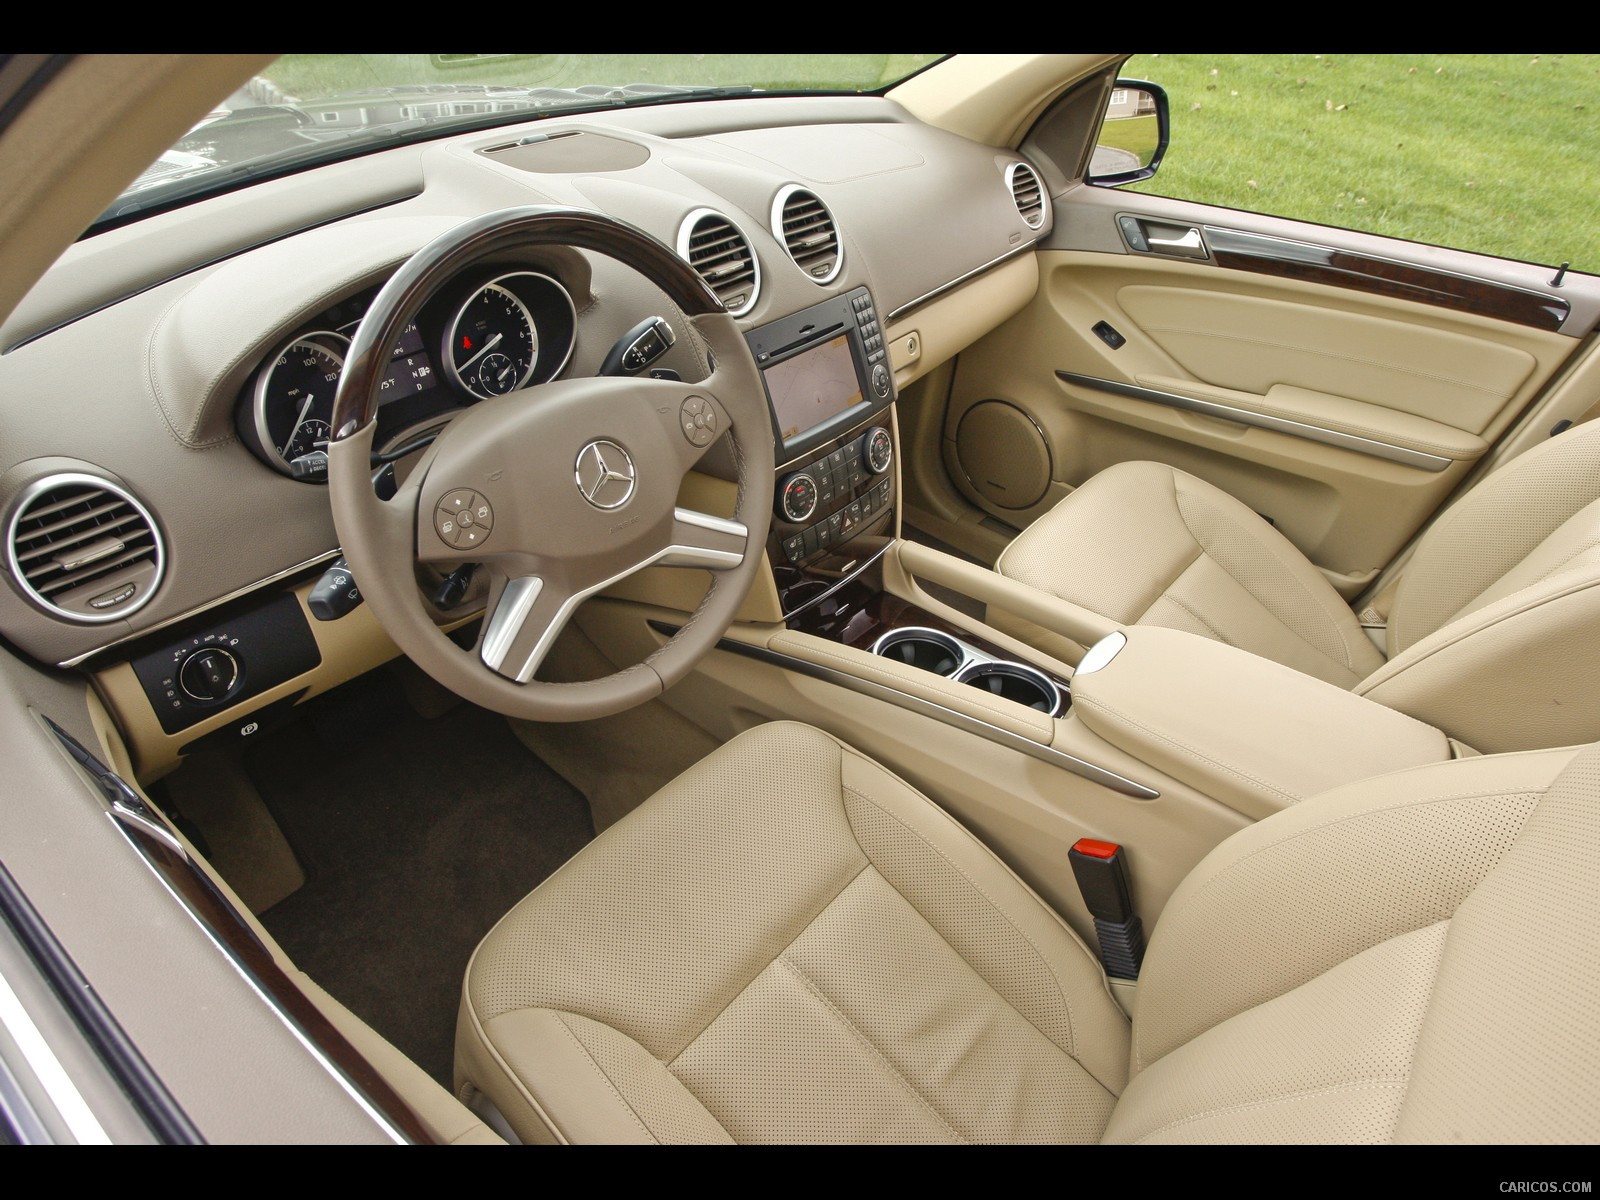 2010 Mercedes-Benz GL450 - Interior, #98 of 112